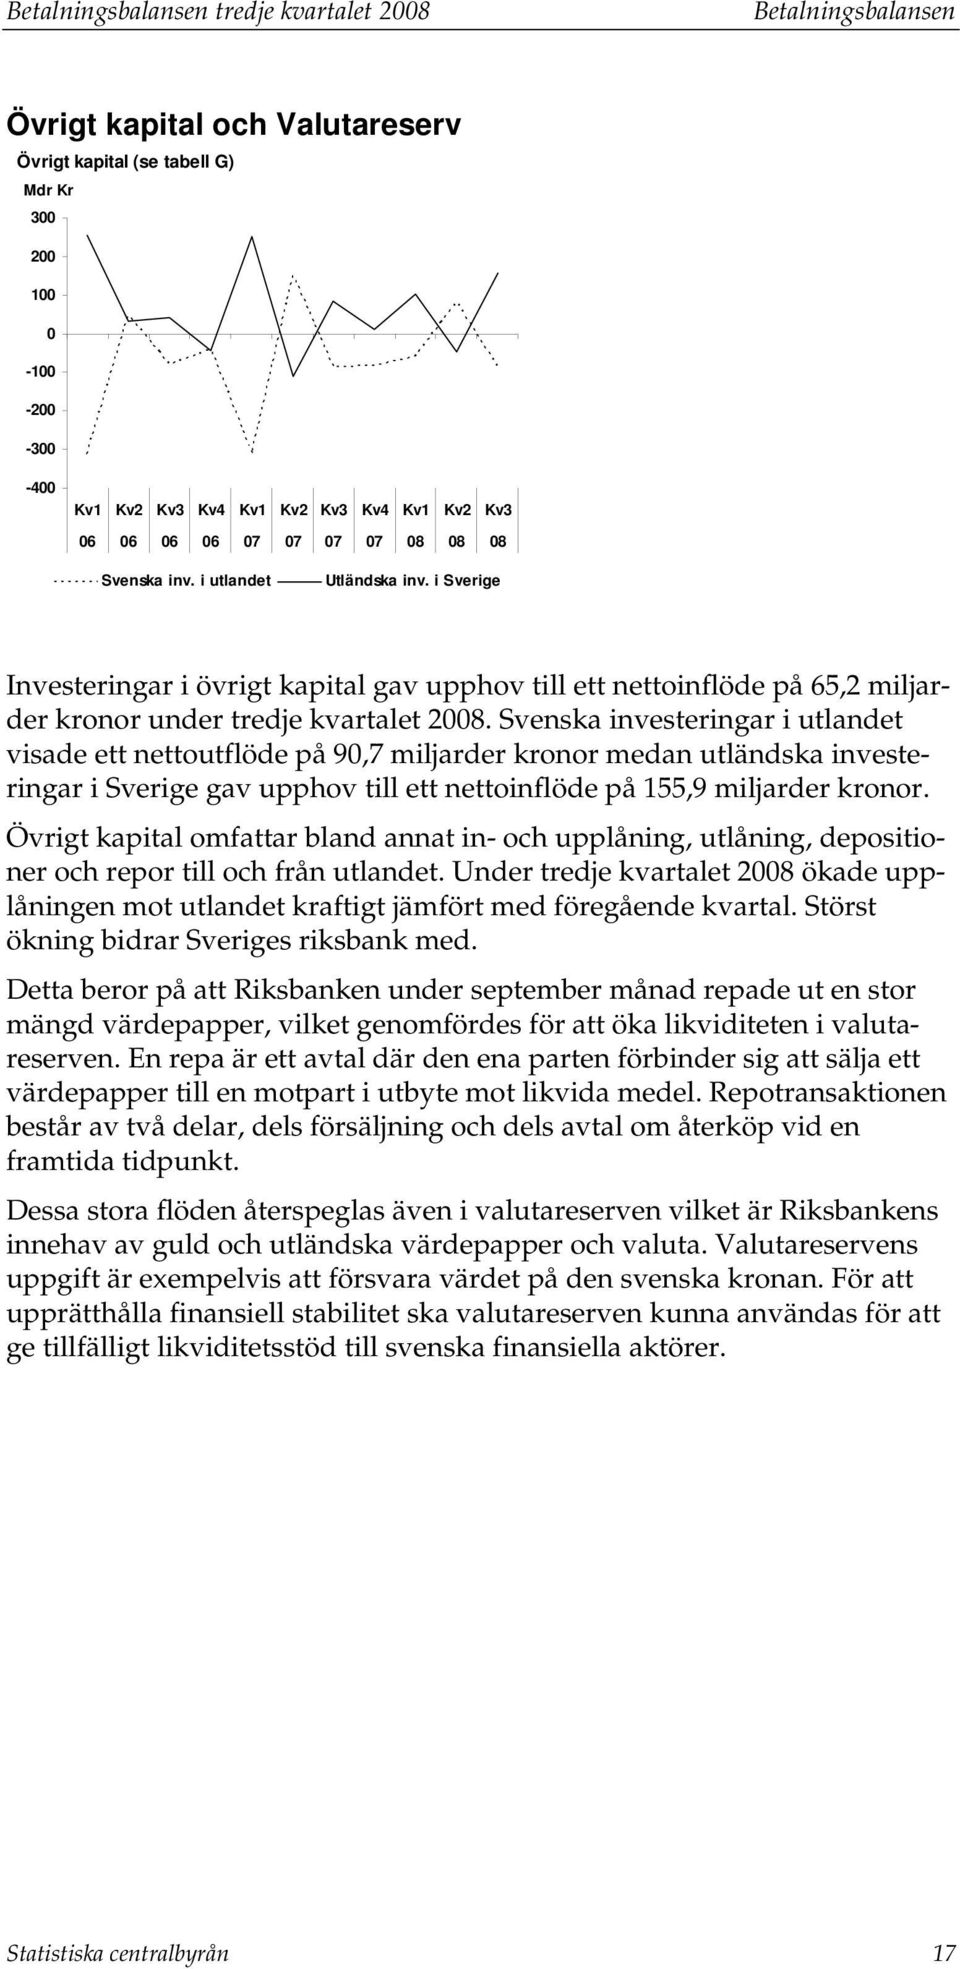 Svenska inveseringar i ulande visade e neouflöde på 90,7 miljarder kronor medan uländska inveseringar i Sverige gav upphov ill e neoinflöde på 155,9 miljarder kronor.